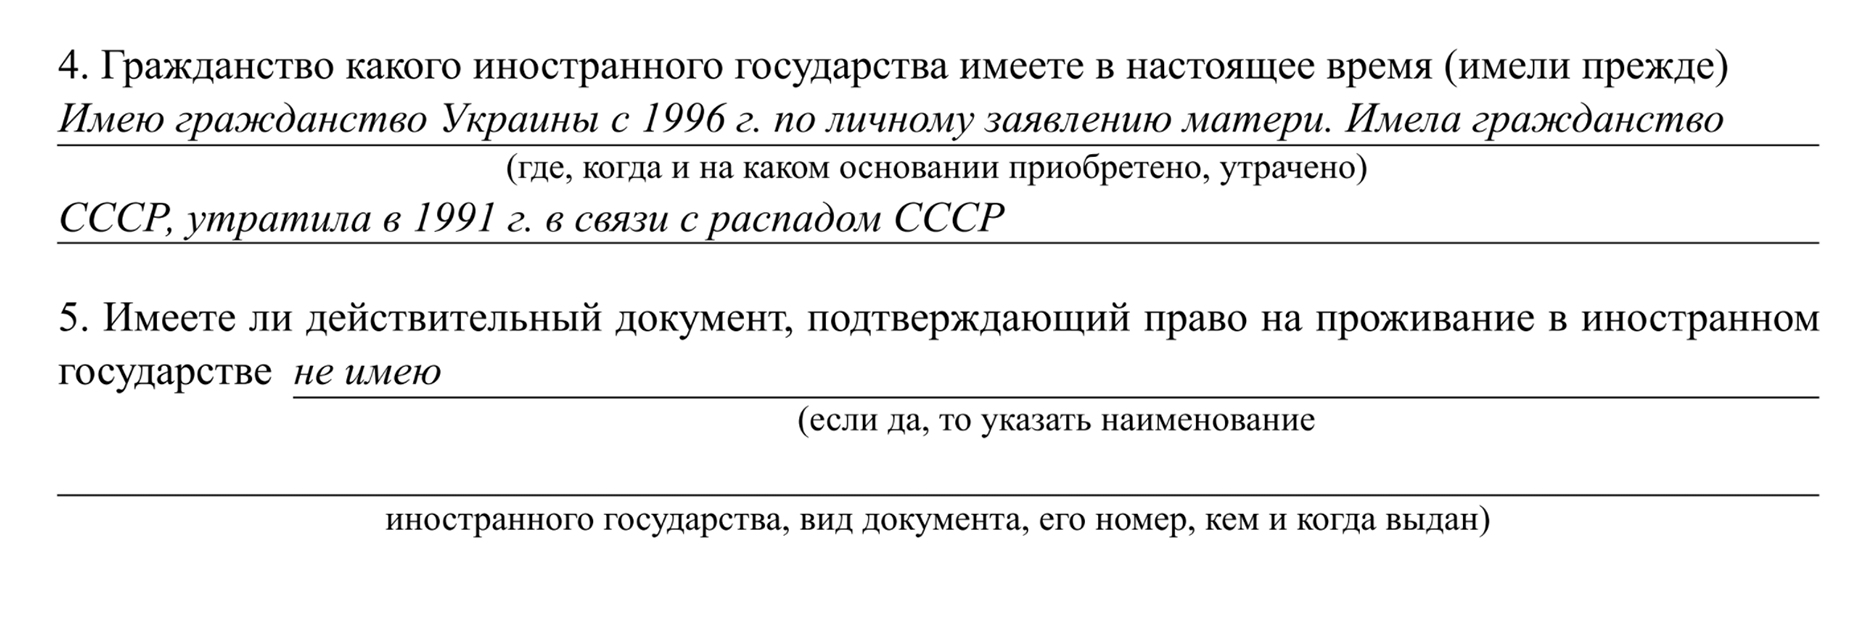 Обратите внимание: СССР тоже относится к другим государствам, так что в ответе на четвертый вопрос его обязательно нужно указывать